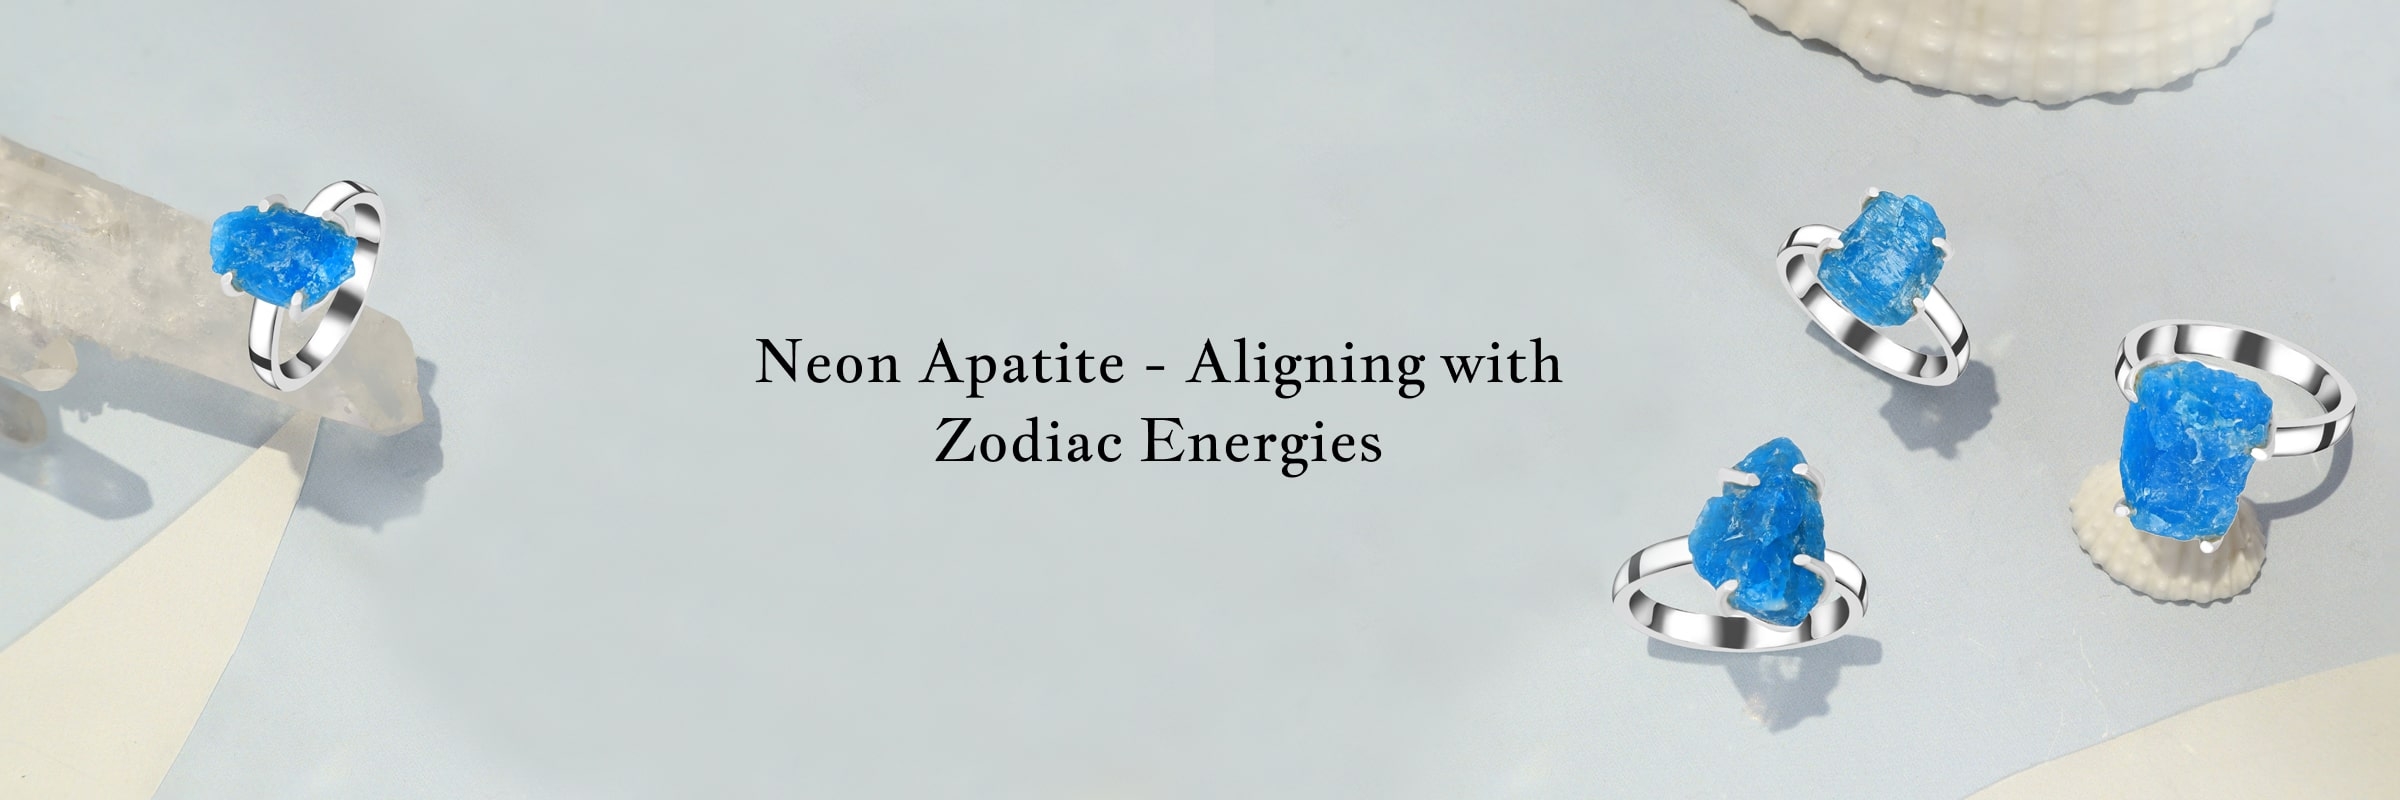 Zodiac Association of Neon Apatite Jewel